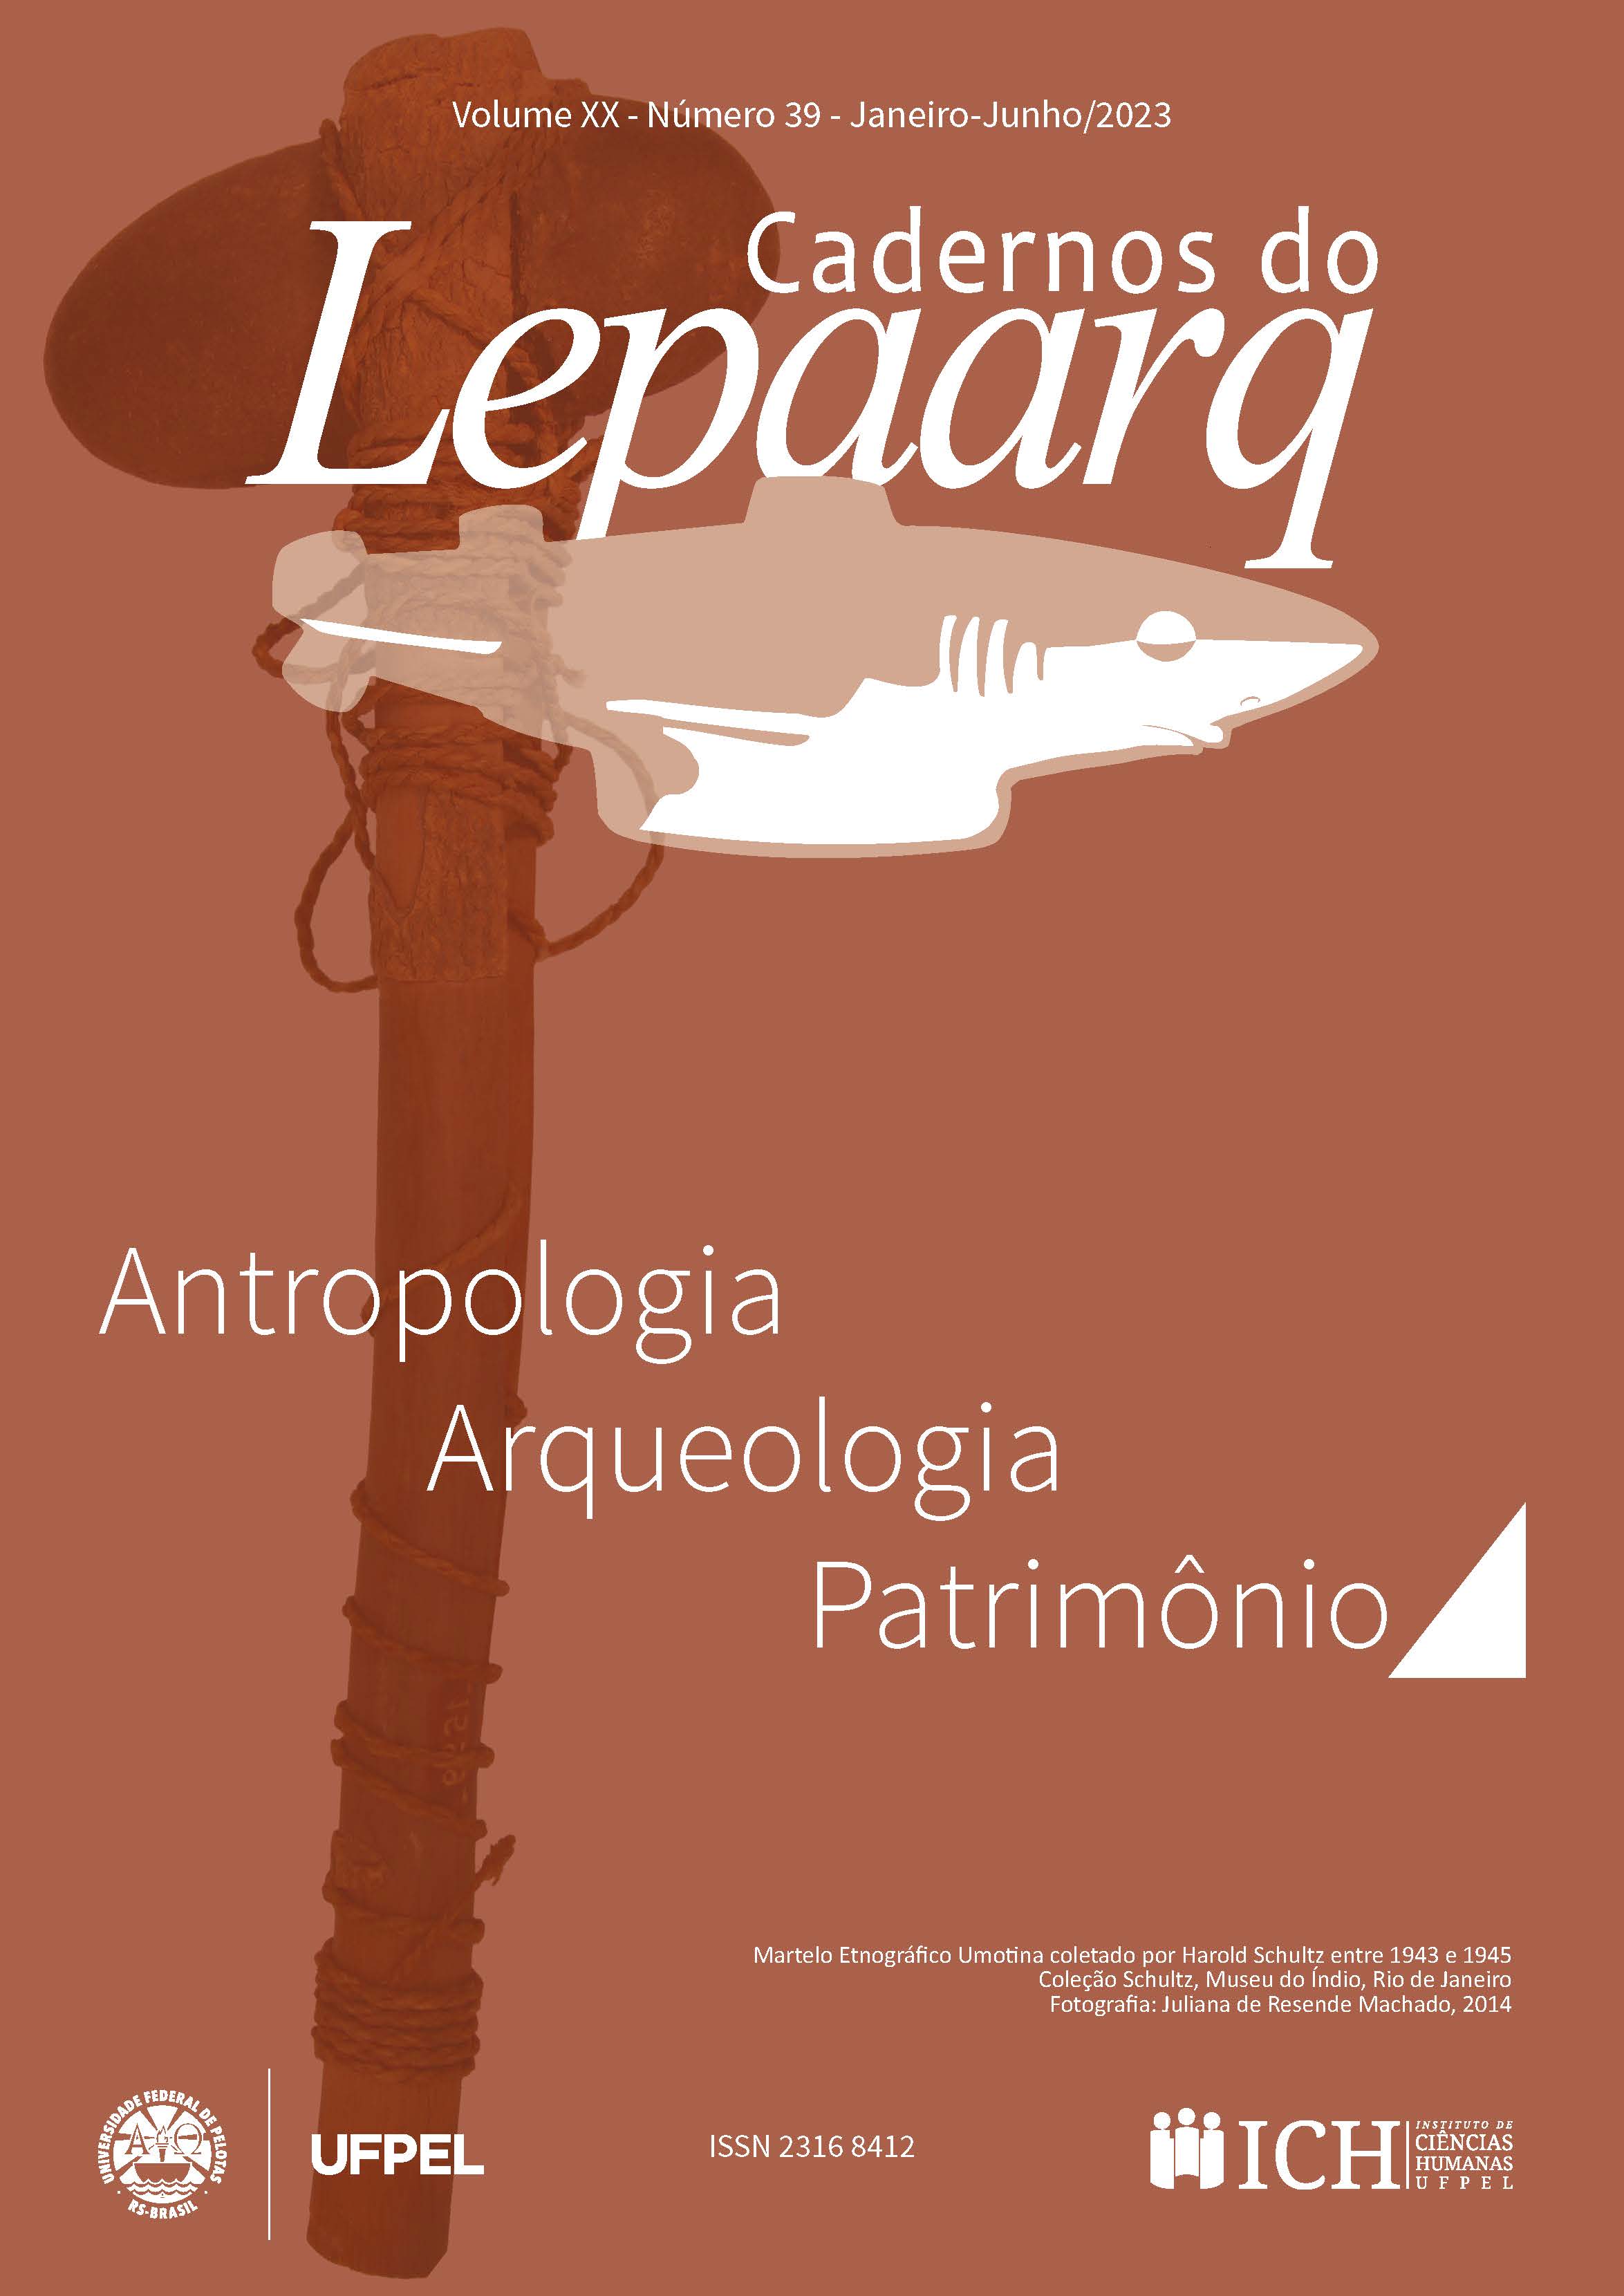 (PDF) Arqueologia hoje: tendências e debates